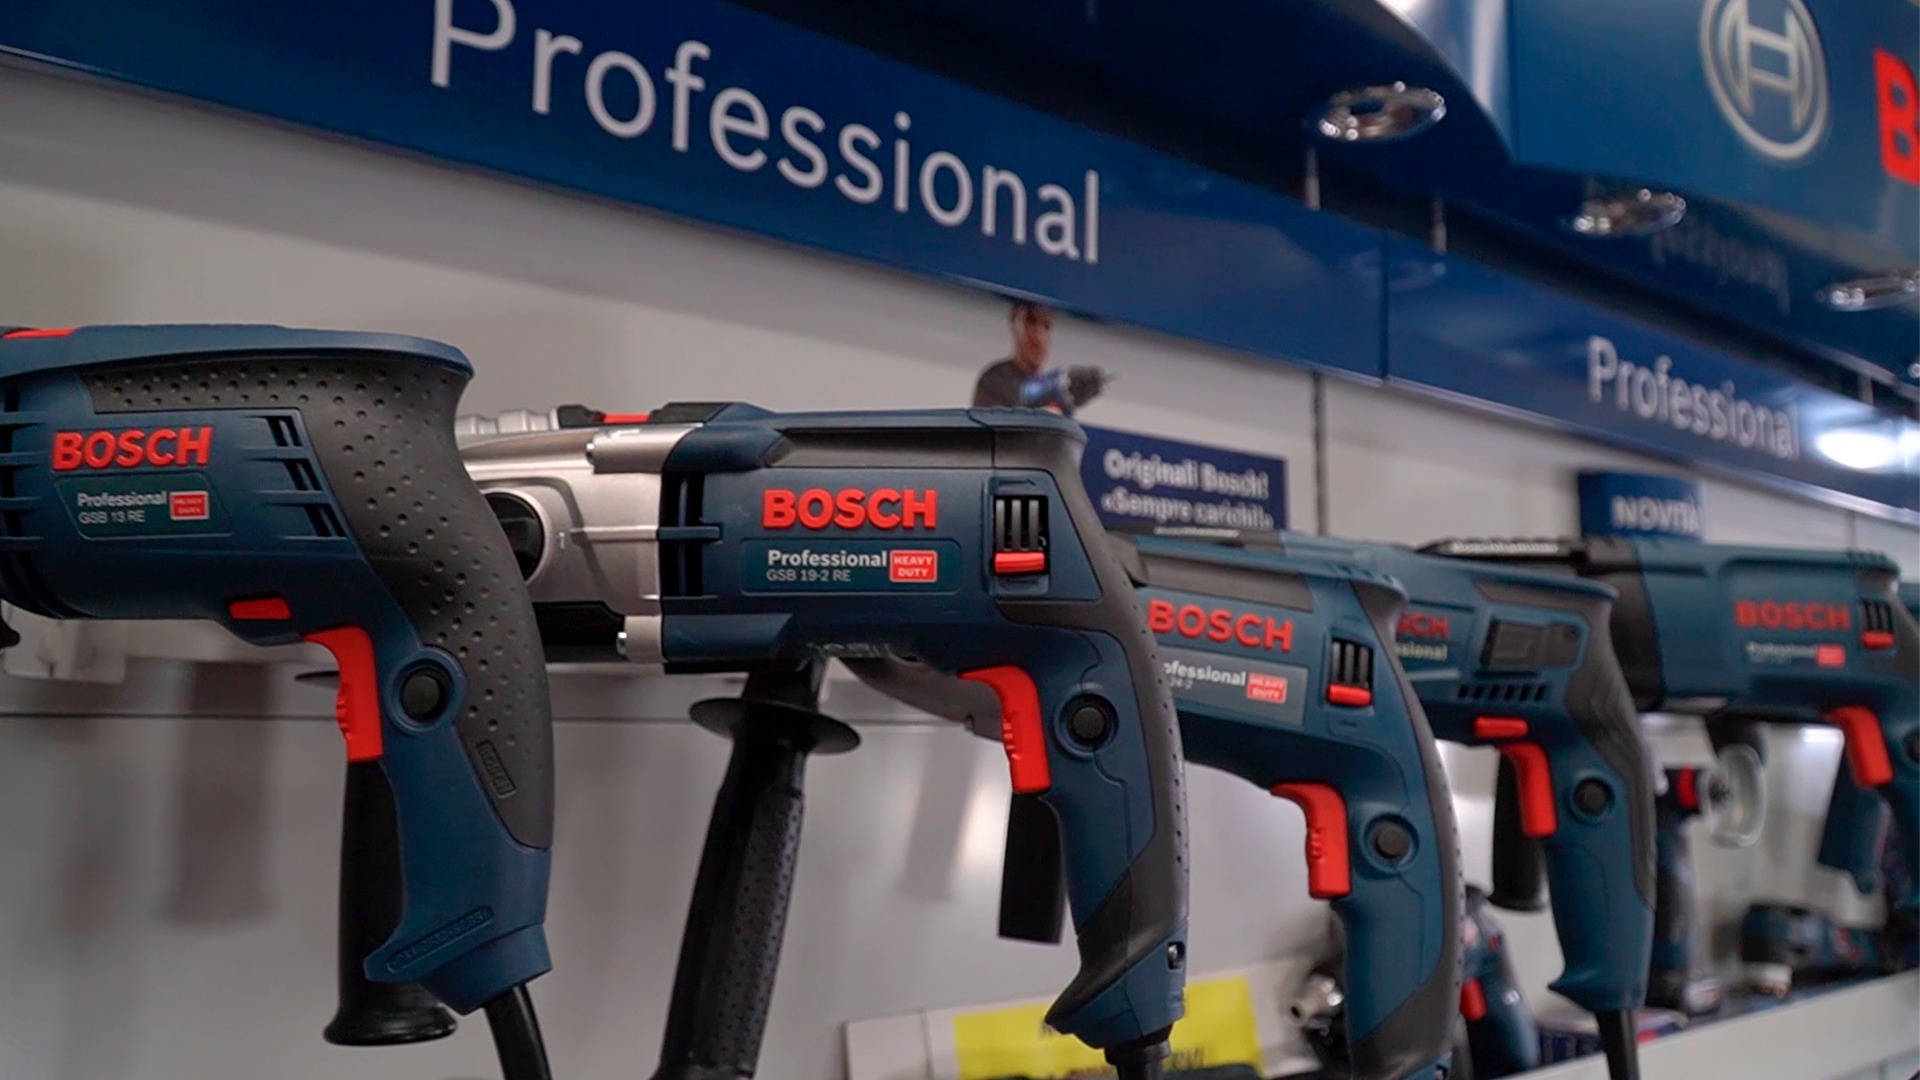 Entro il 30 dicembre se acquisti un #elettroutensile Bosch riceverai